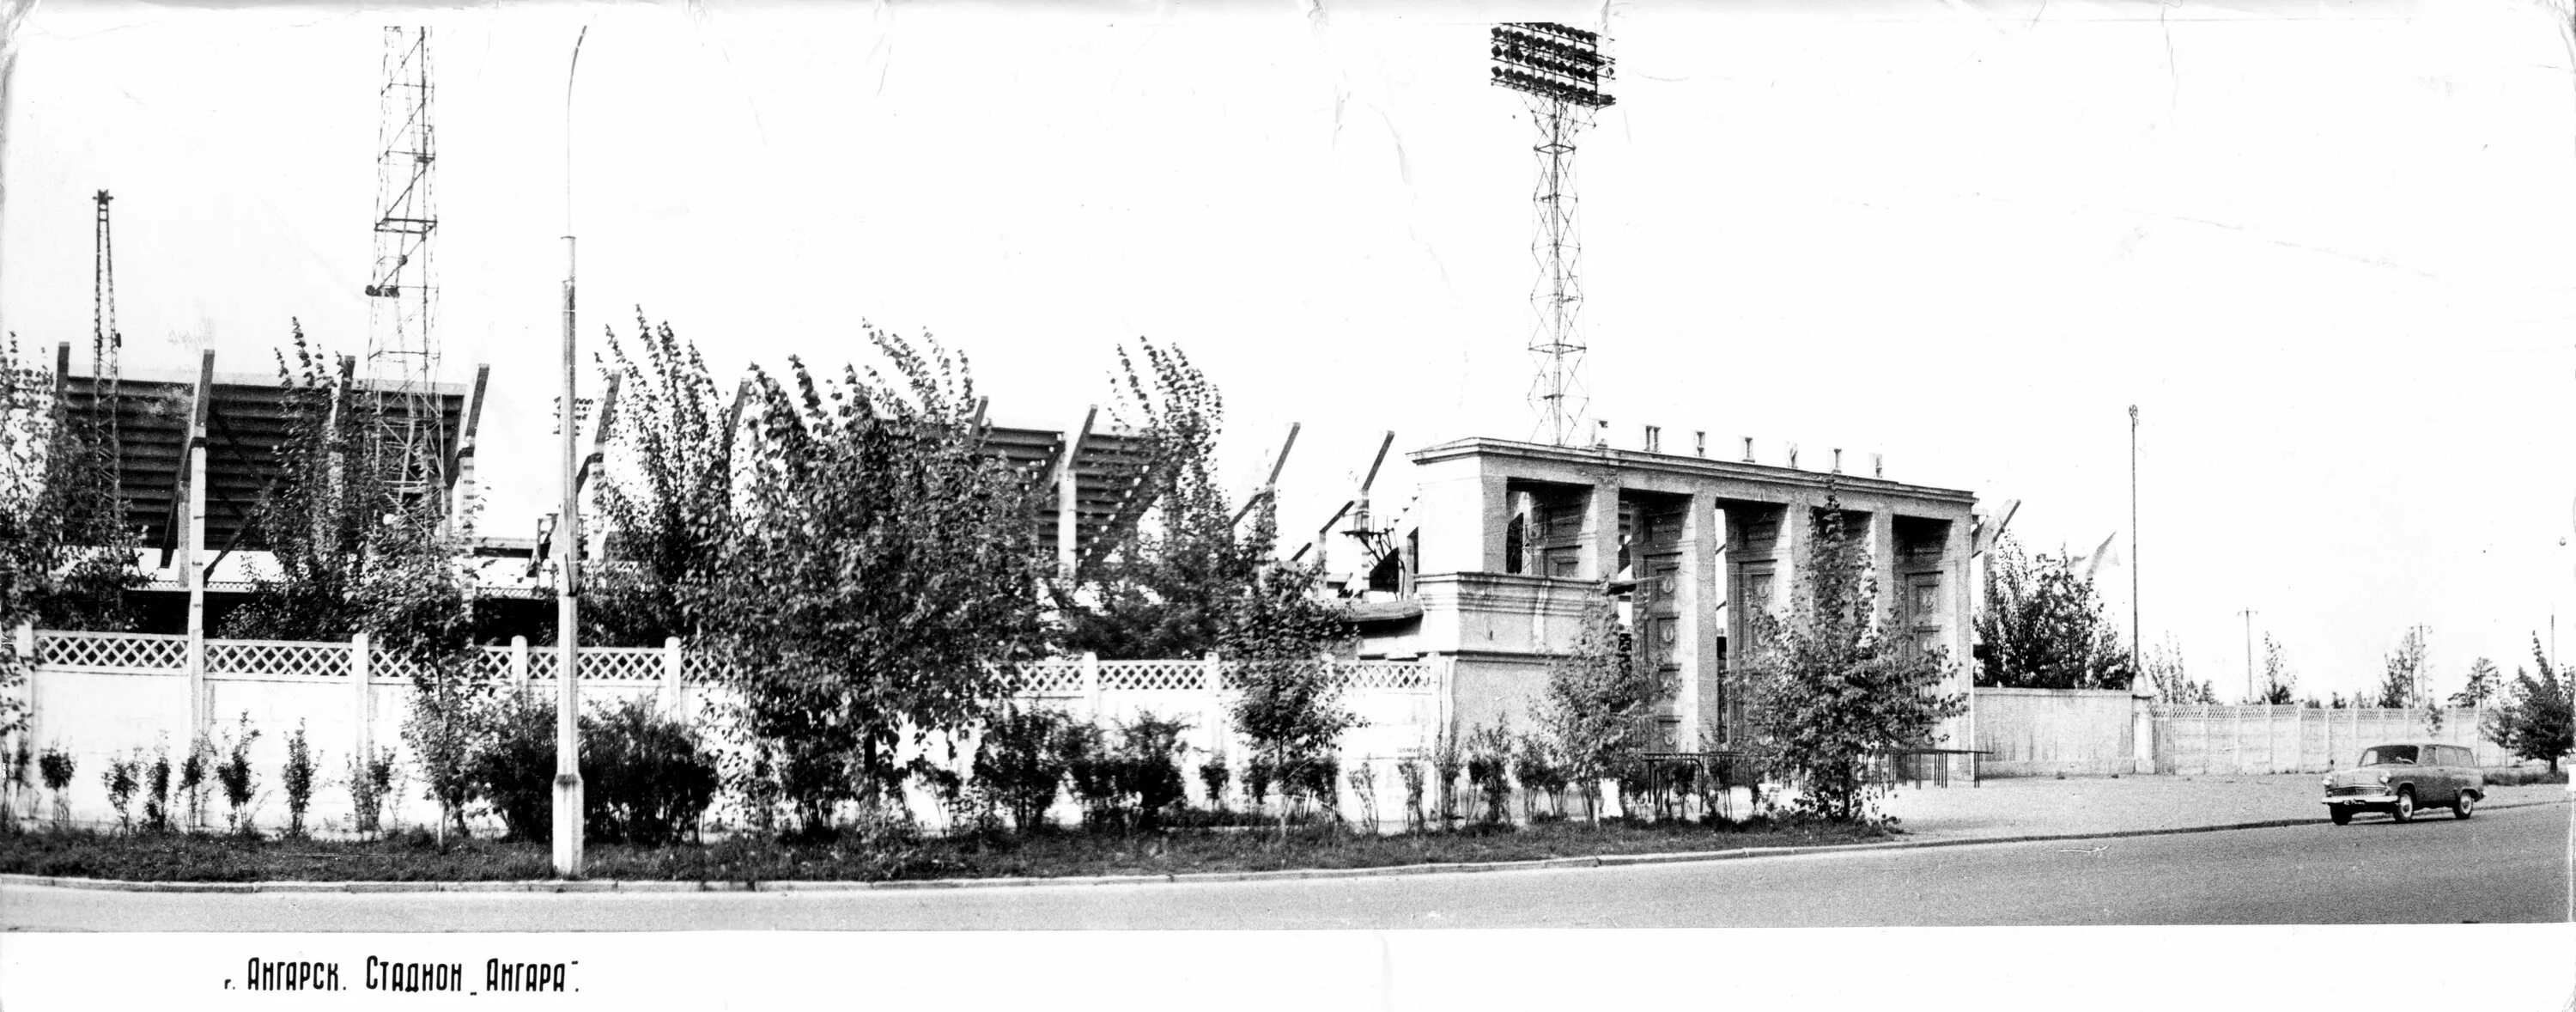 Г Ангарск стадион Ангара. Стадион Ангарск. Стадион Ангара в 50-е годы в Ангарске. Ангарск 1960.